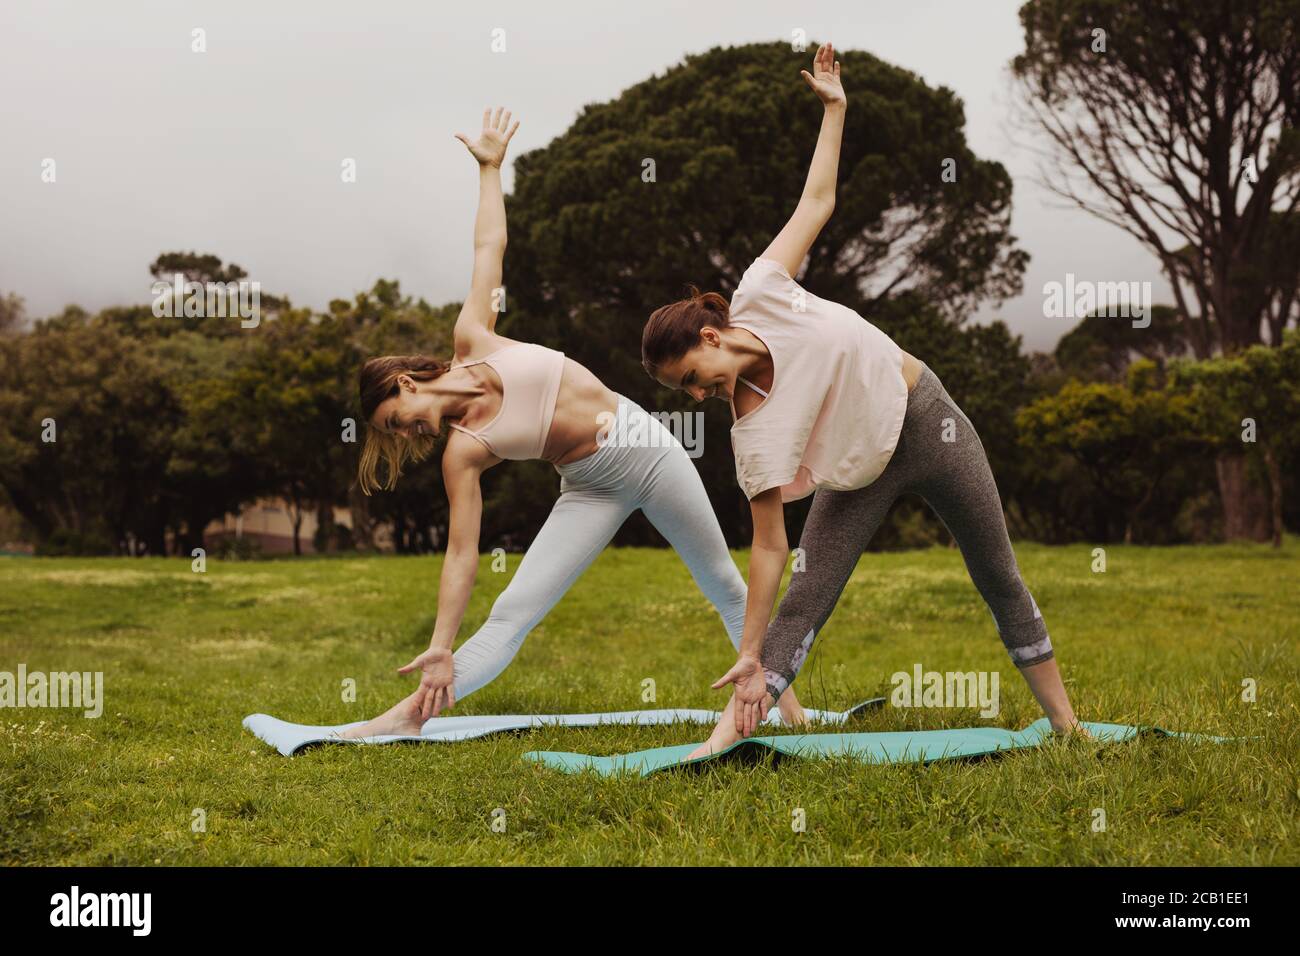 le donne in forma di triangolo posano mentre praticano yoga in un parco. Donne che si allenano in un parco. Foto Stock